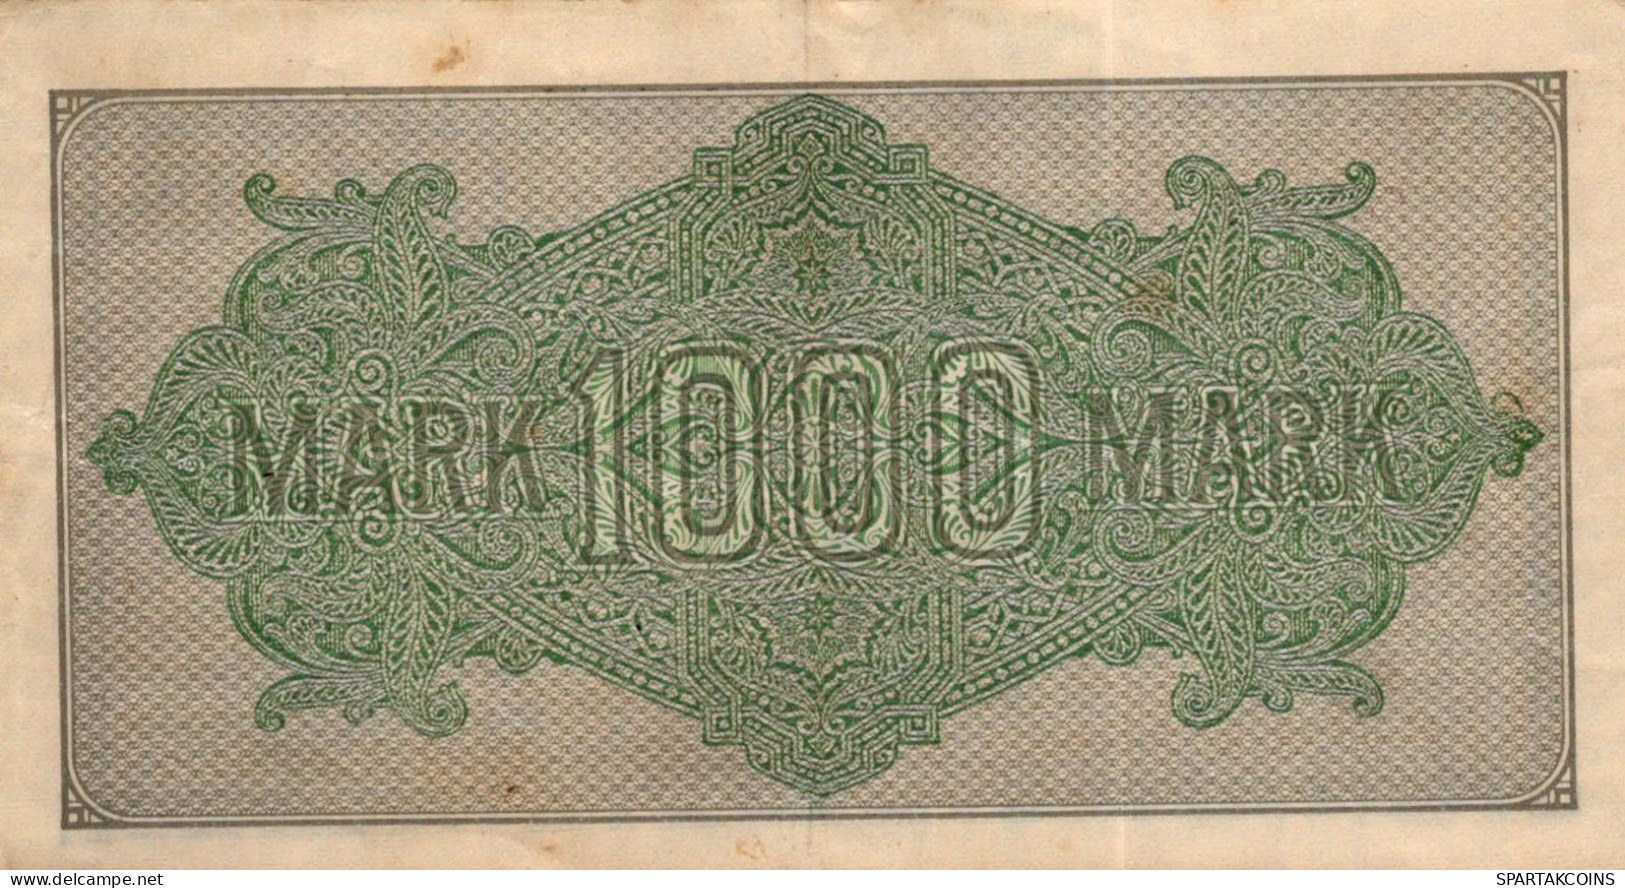 1000 MARK 1922 Stadt BERLIN DEUTSCHLAND Papiergeld Banknote #PL415 - [11] Local Banknote Issues